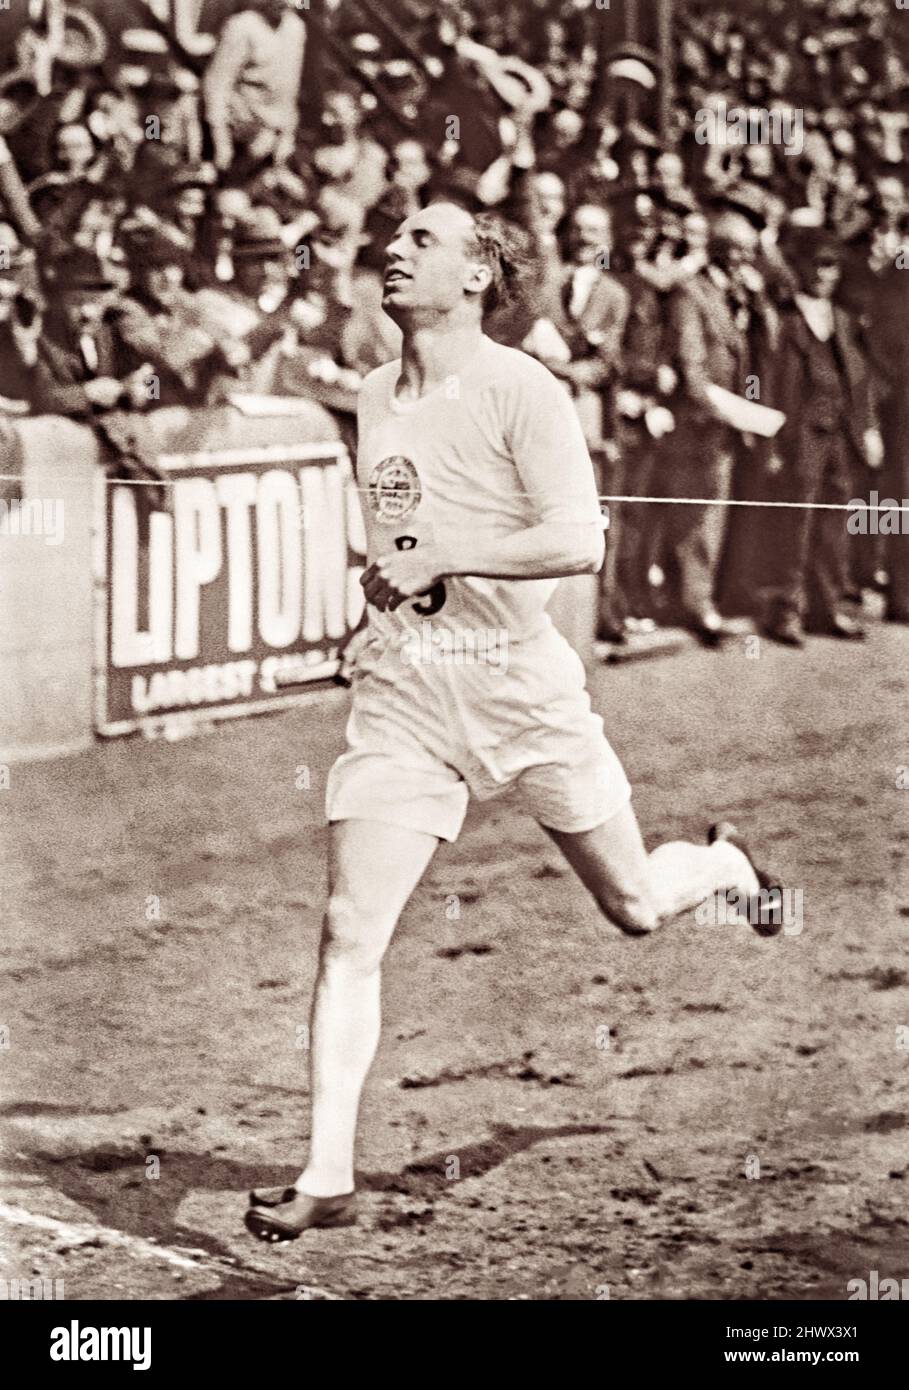 Eric Liddell, athlète olympique écossais, a remporté le relais de 1 miles de l'Empire britannique contre les États-Unis lors de la réunion internationale d'athlétisme qui s'est tenue à Stamford Bridge, Londres, le samedi 19 juillet 1924, après les Jeux Olympiques de Paris. En raison des convictions personnelles de sa foi chrétienne, Liddell a refusé de courir son préféré 100 mètres dans les Jeux Olympiques de 1924 parce que la course a eu lieu un dimanche. Au lieu de cela, il a participé à la course de 400 mètres, qu'il a gagnée. En 1925, Liddell retourne en Chine (où il est né) et y sert de missionnaire jusqu'à sa mort en 1945 dans un camp d'internement civil japonais. Banque D'Images